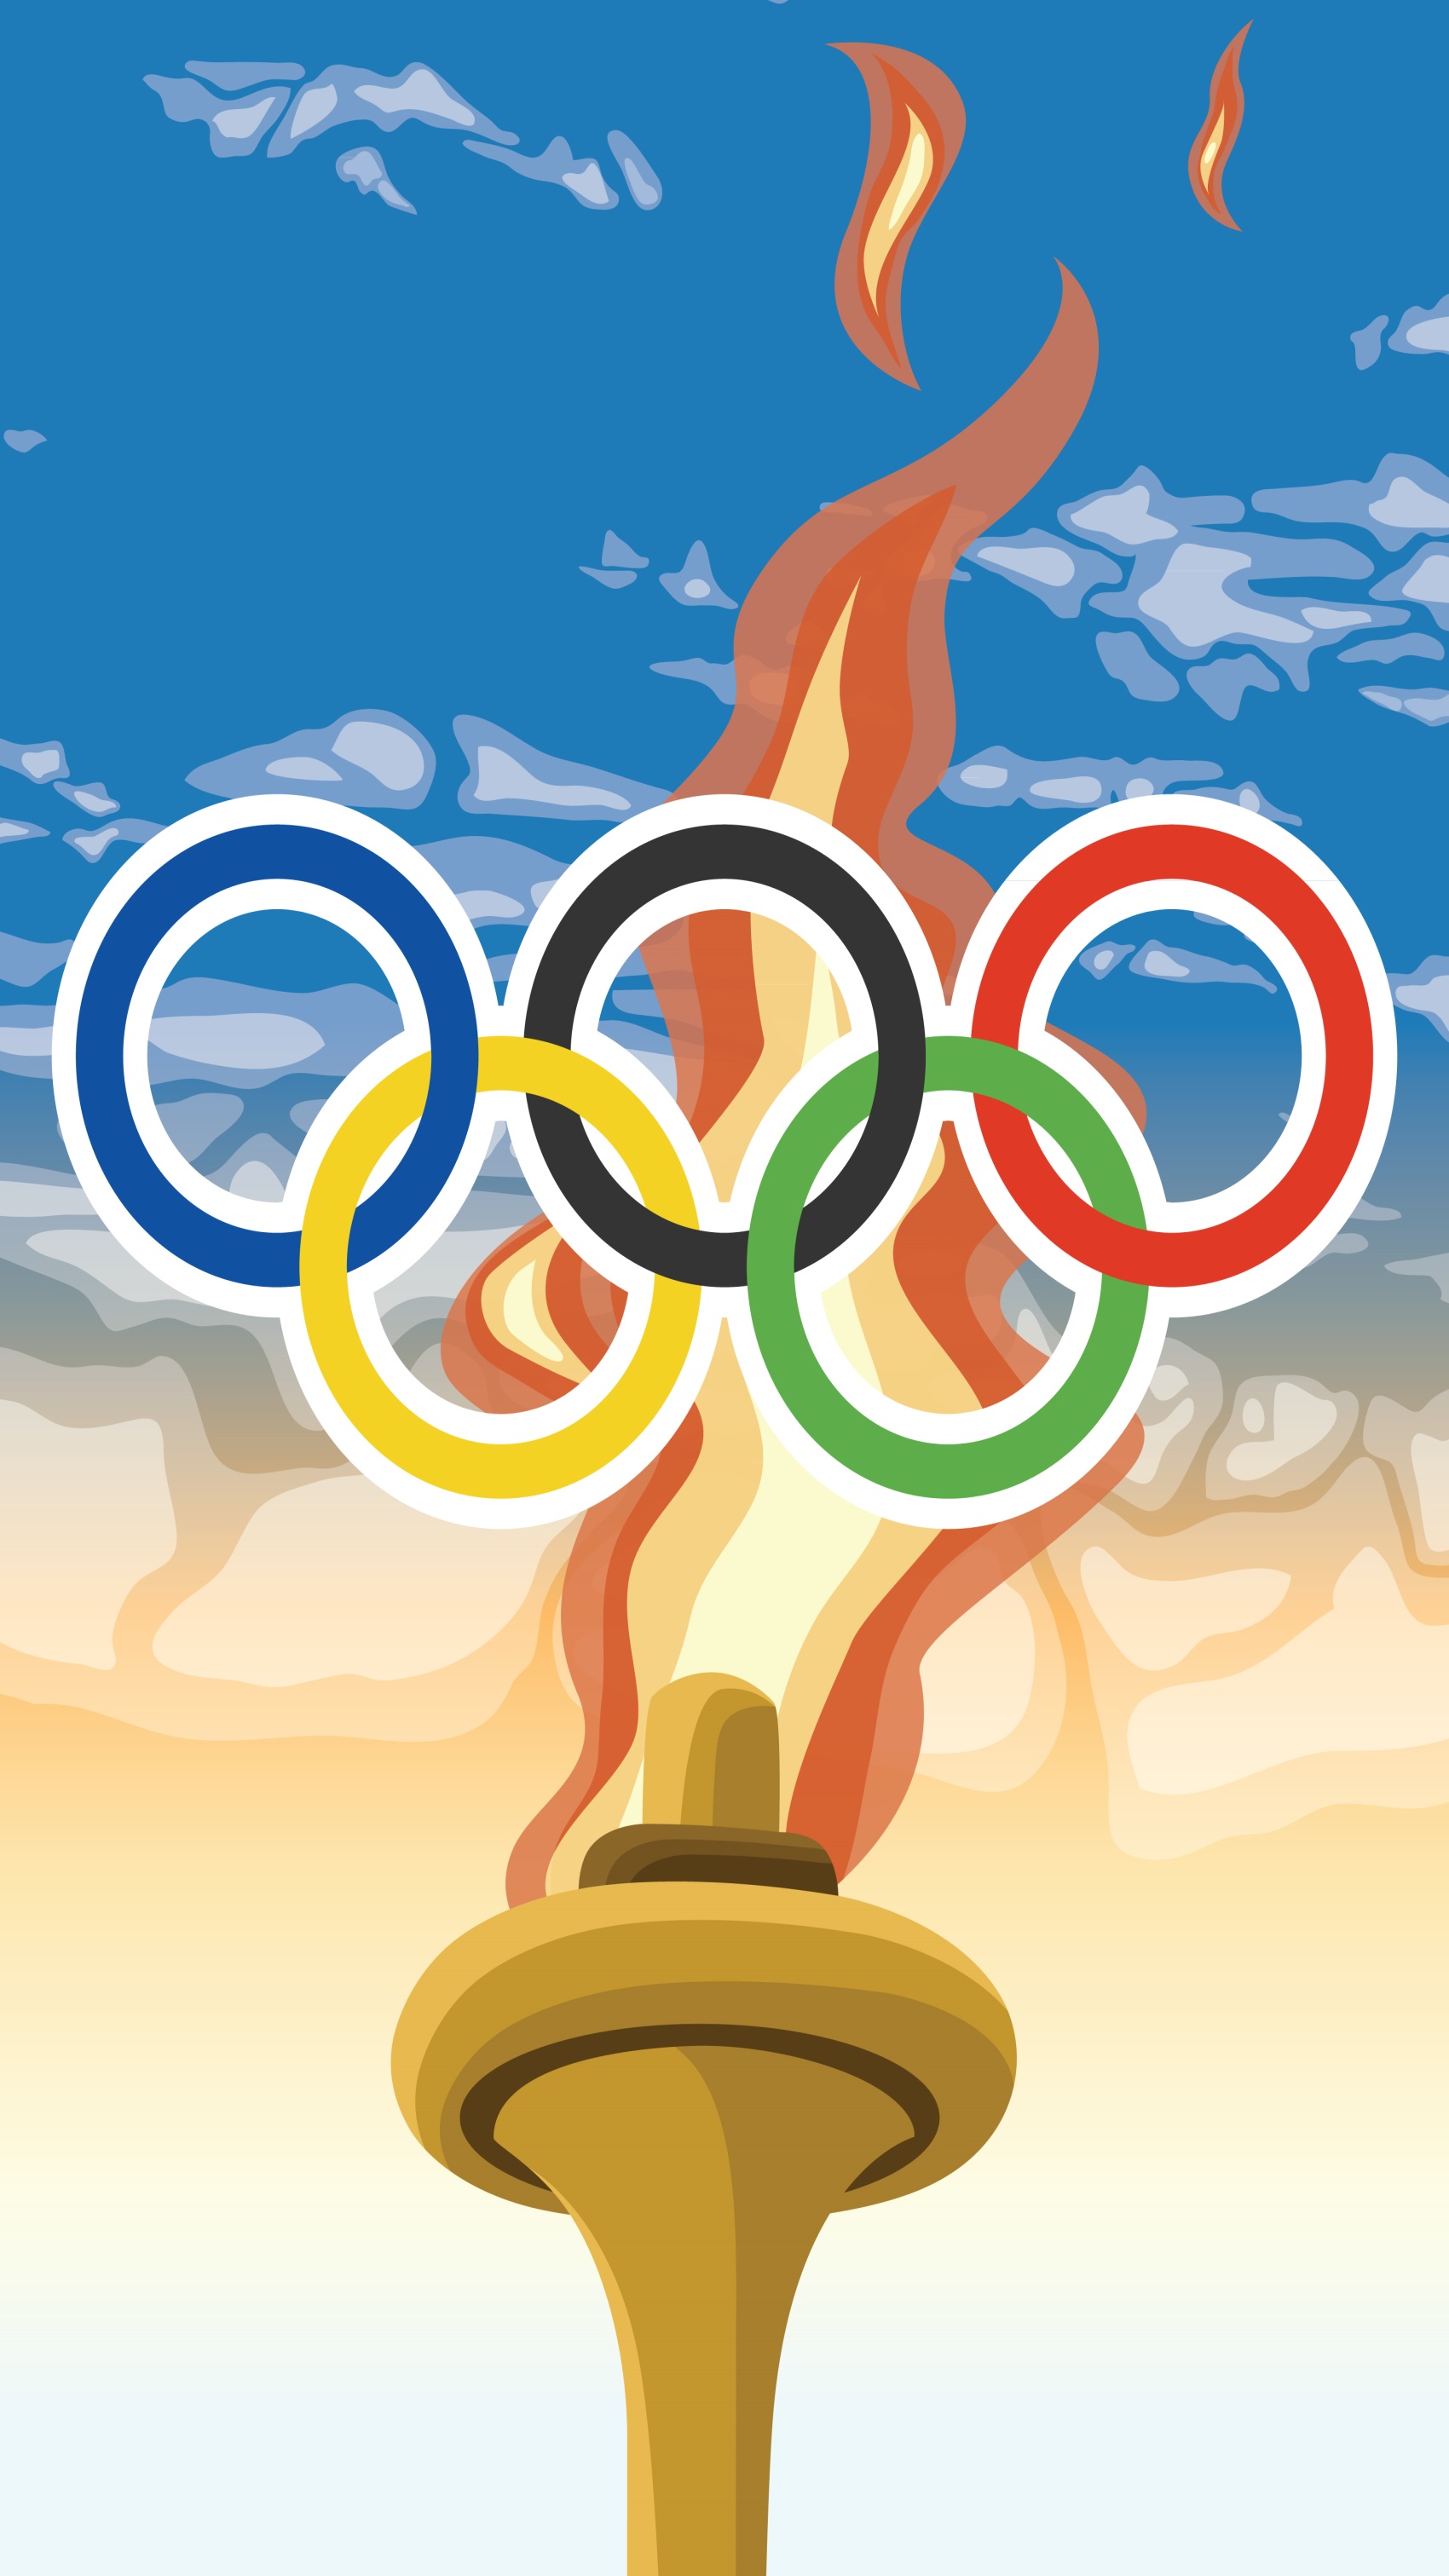 Зажёгся огонь Олимпийский...